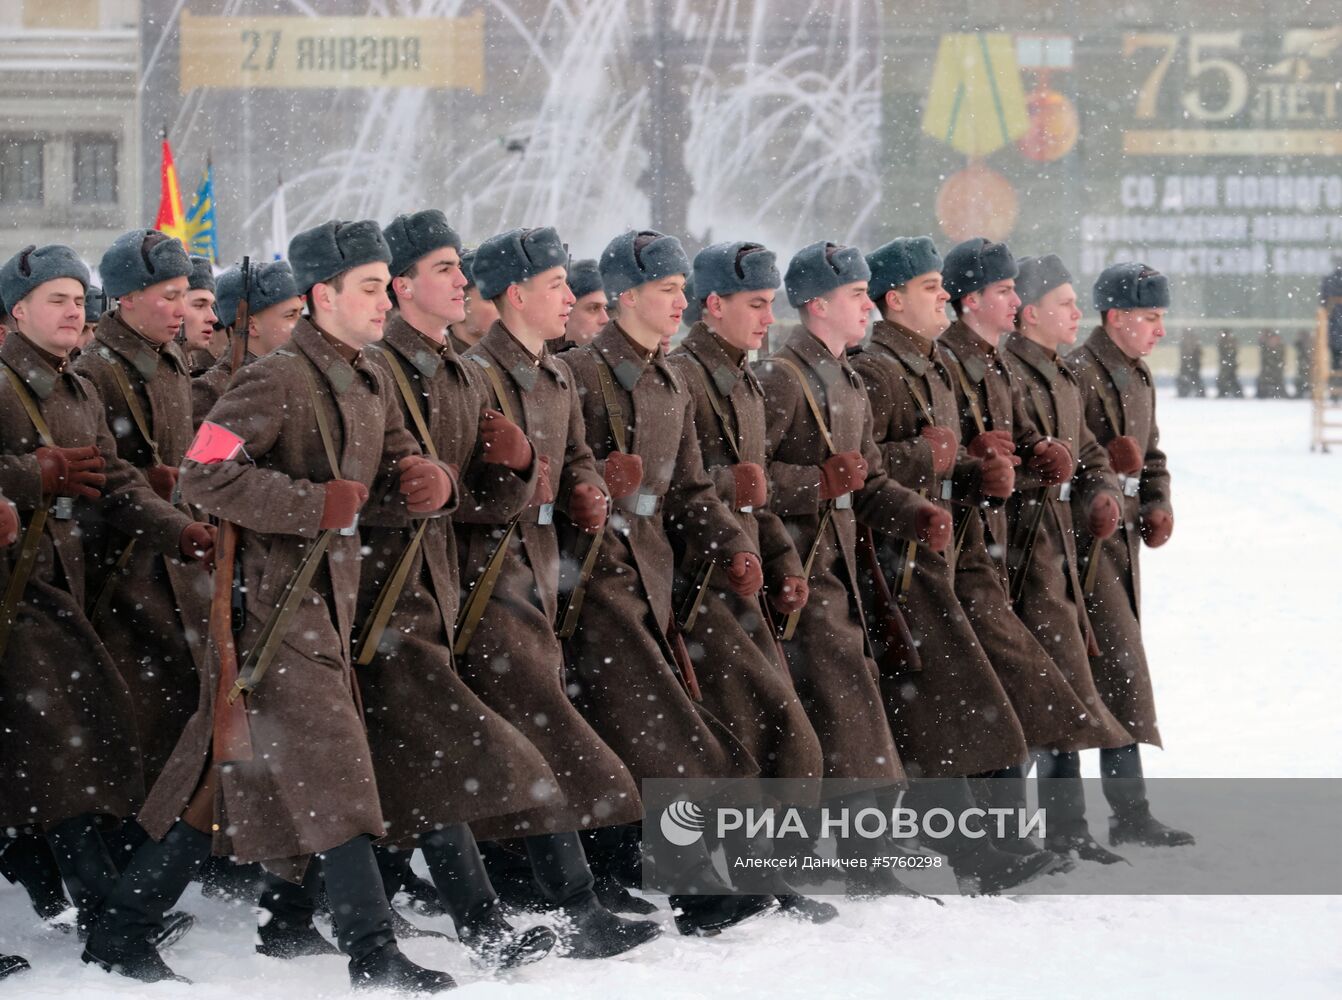 Генеральная репетиция парада в честь 75-летия снятия блокады Ленинграда